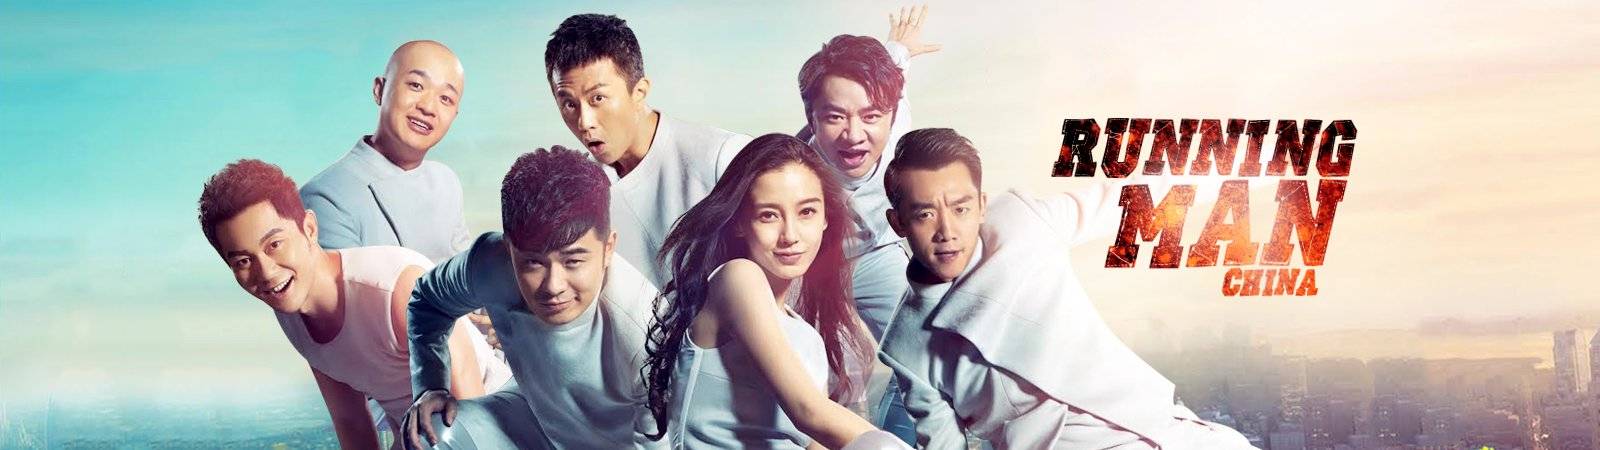 Xem Phim Running Man Bản Trung Quốc 2, Brother China Season 2 2015